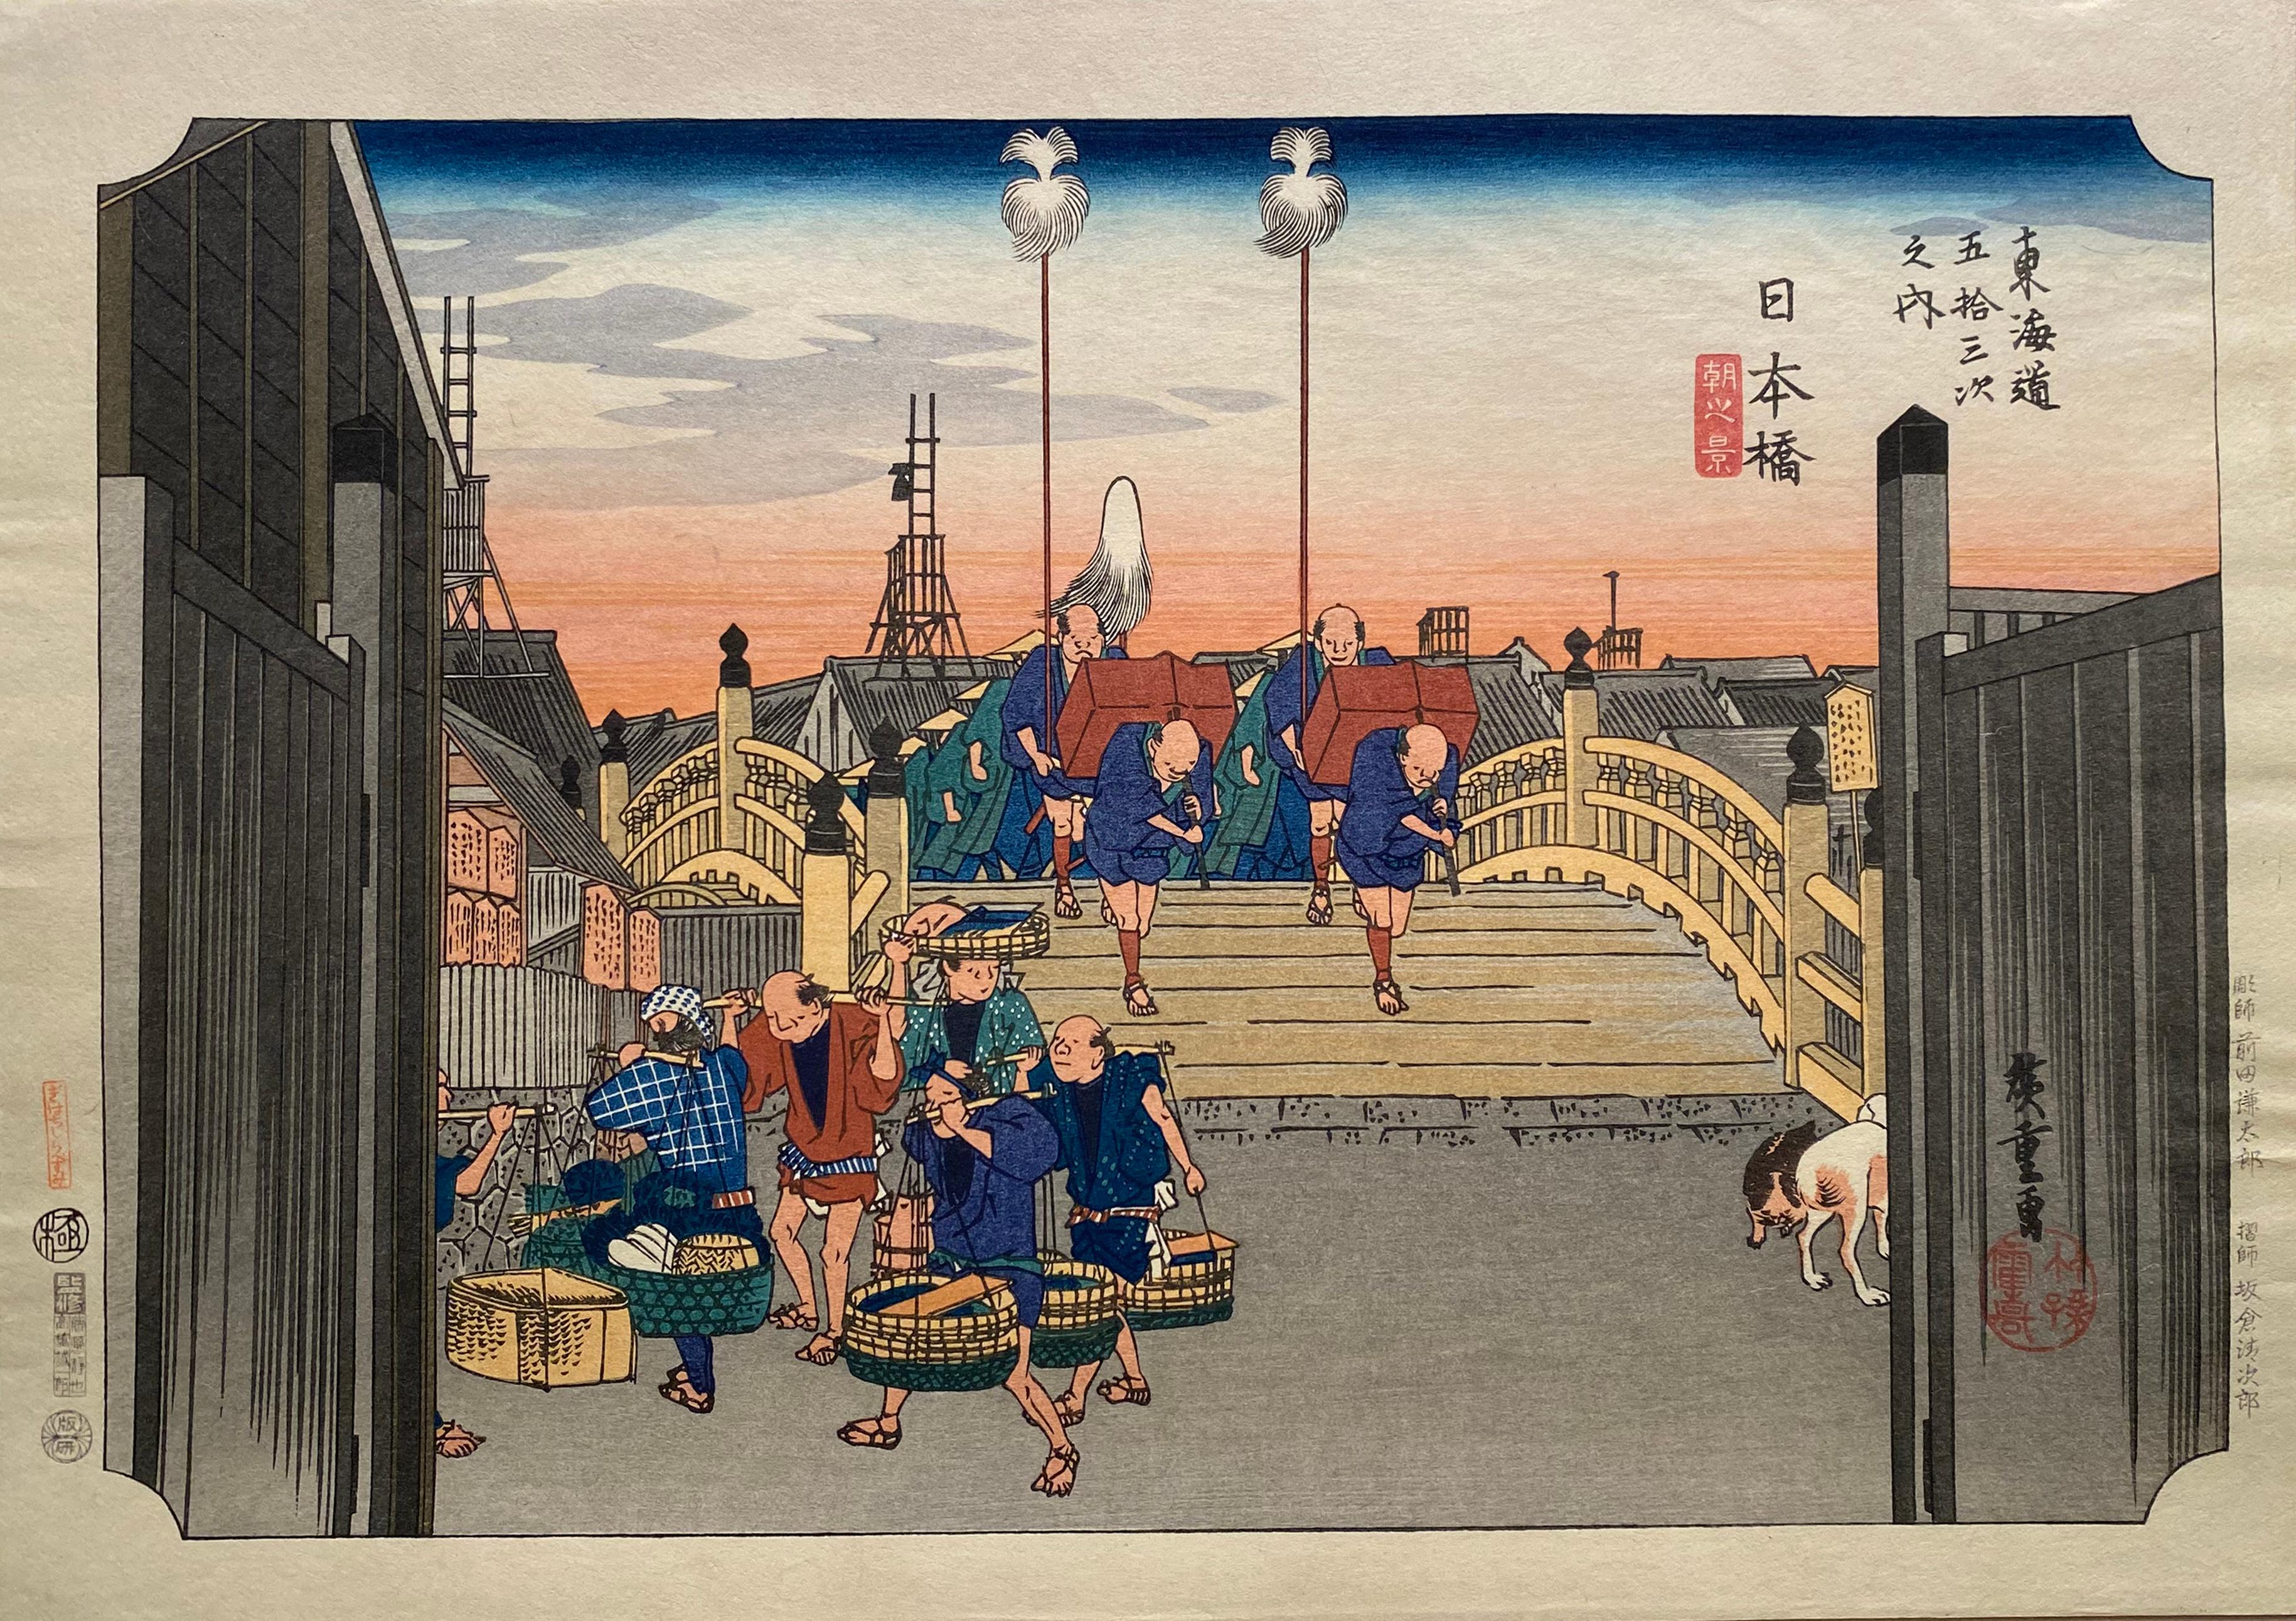 Nihon-Bashi Station", nach Utagawa Hiroshige 歌川廣重, Ukiyo-e Holzschnitt, Tokaido